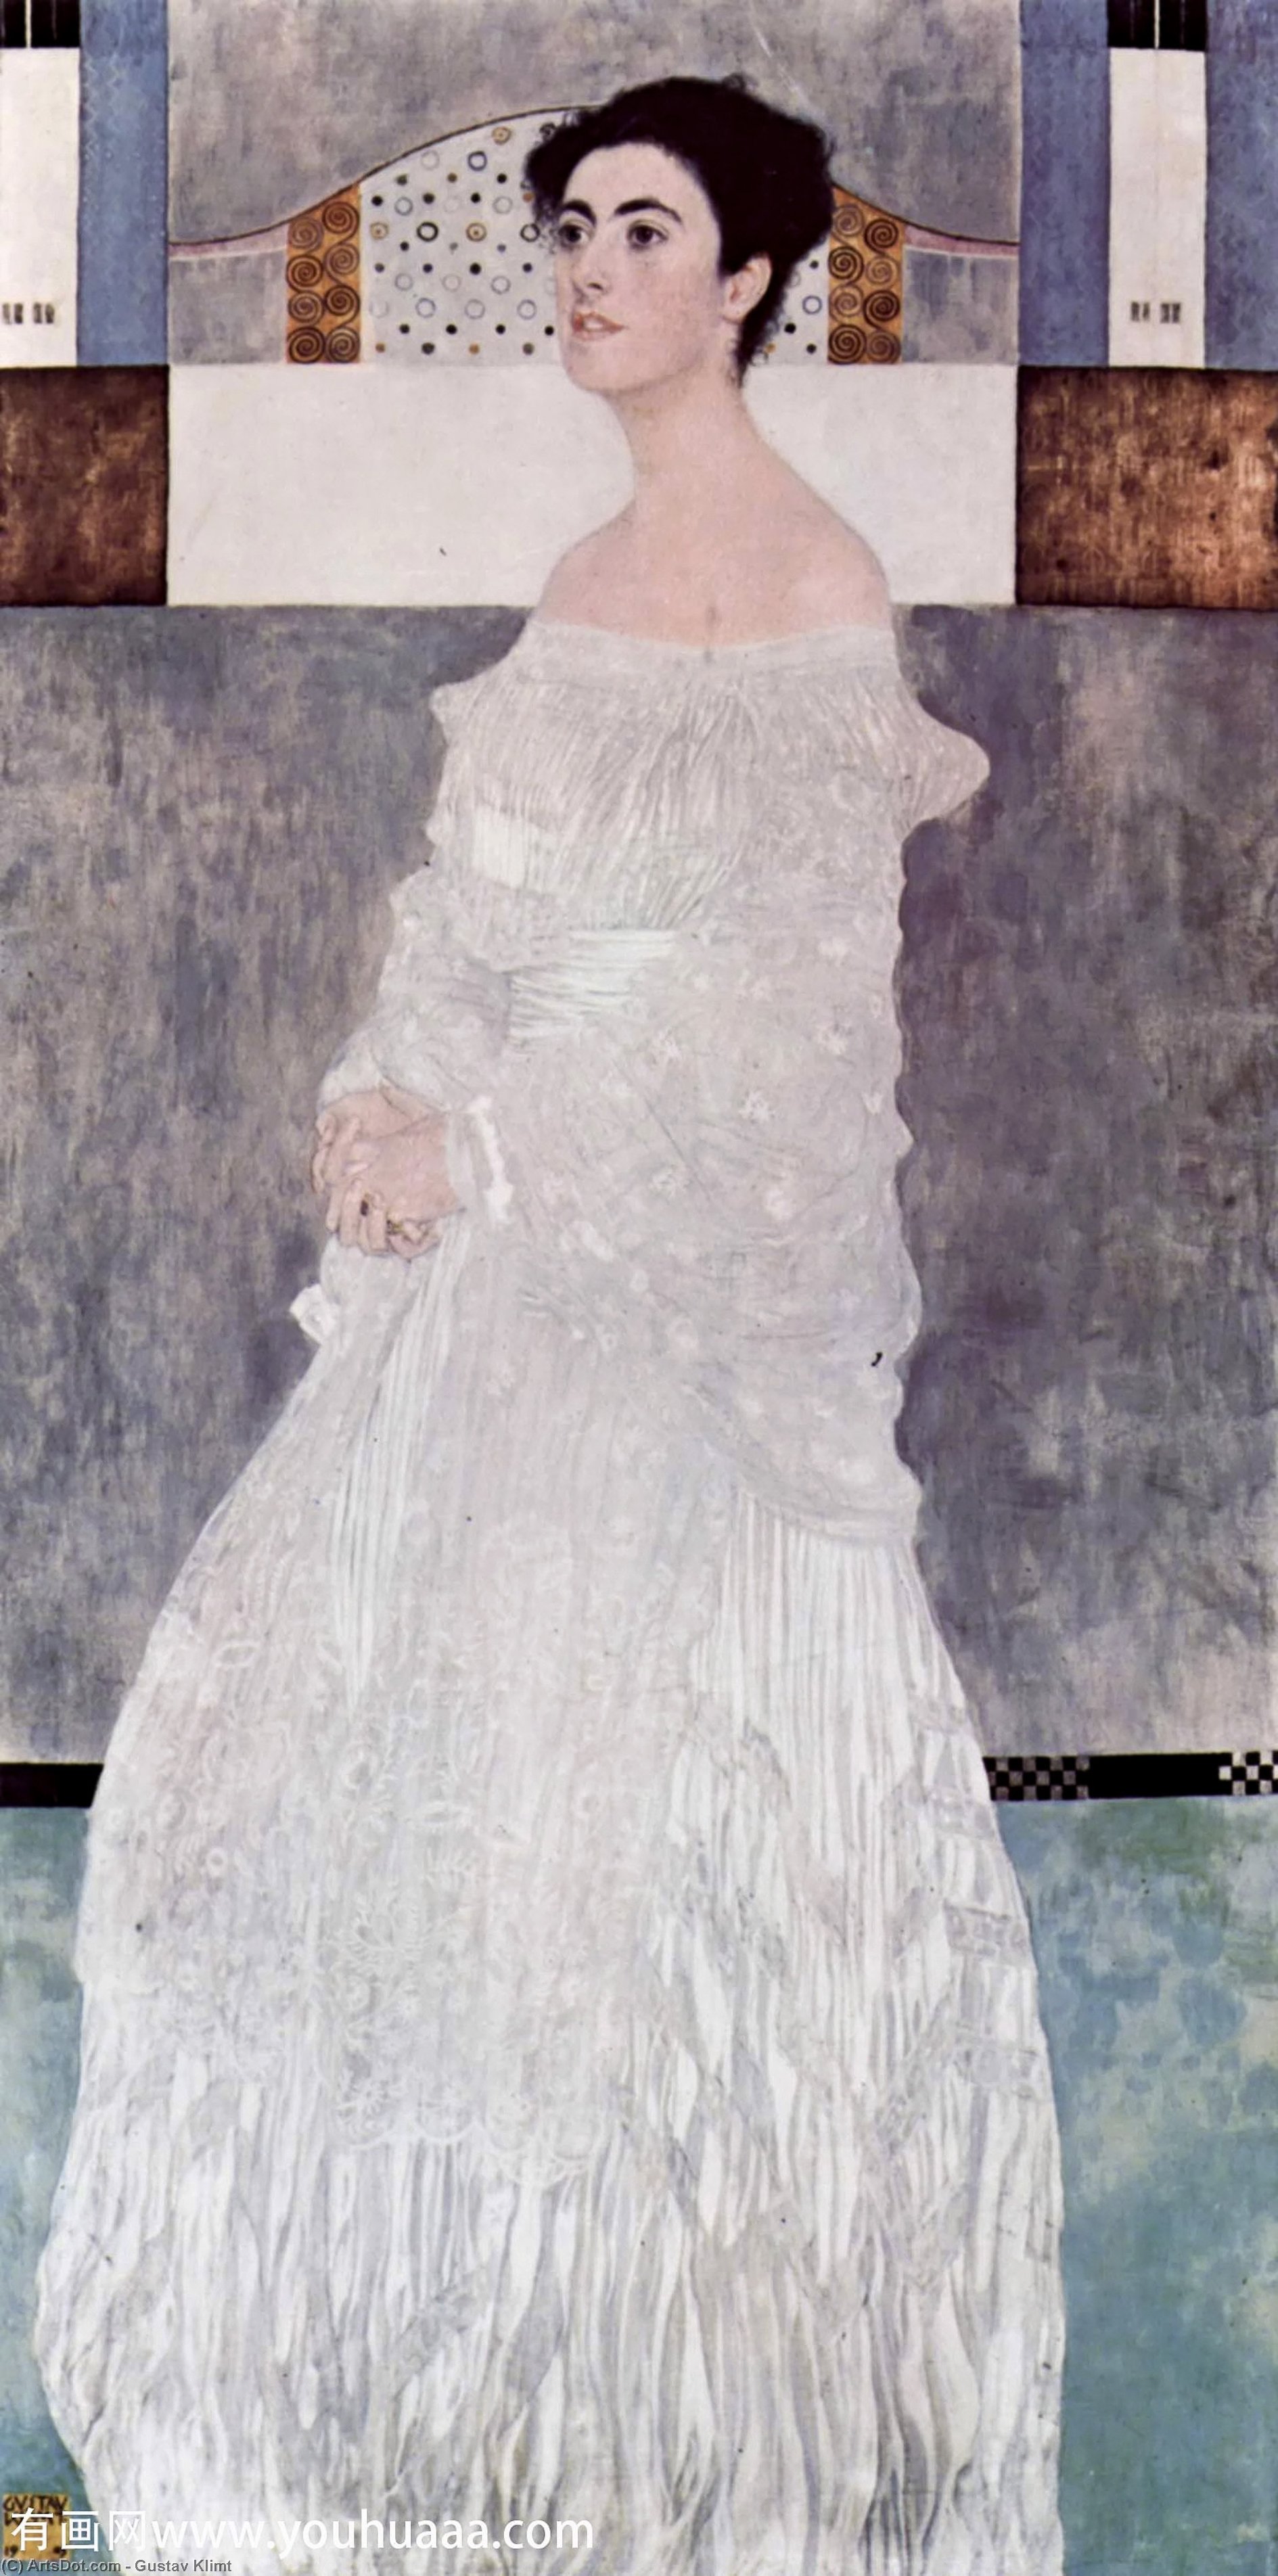 WikiOO.org - אנציקלופדיה לאמנויות יפות - ציור, יצירות אמנות Gustav Klimt - Portrait of Margaret Stonborough-Wittgenstein